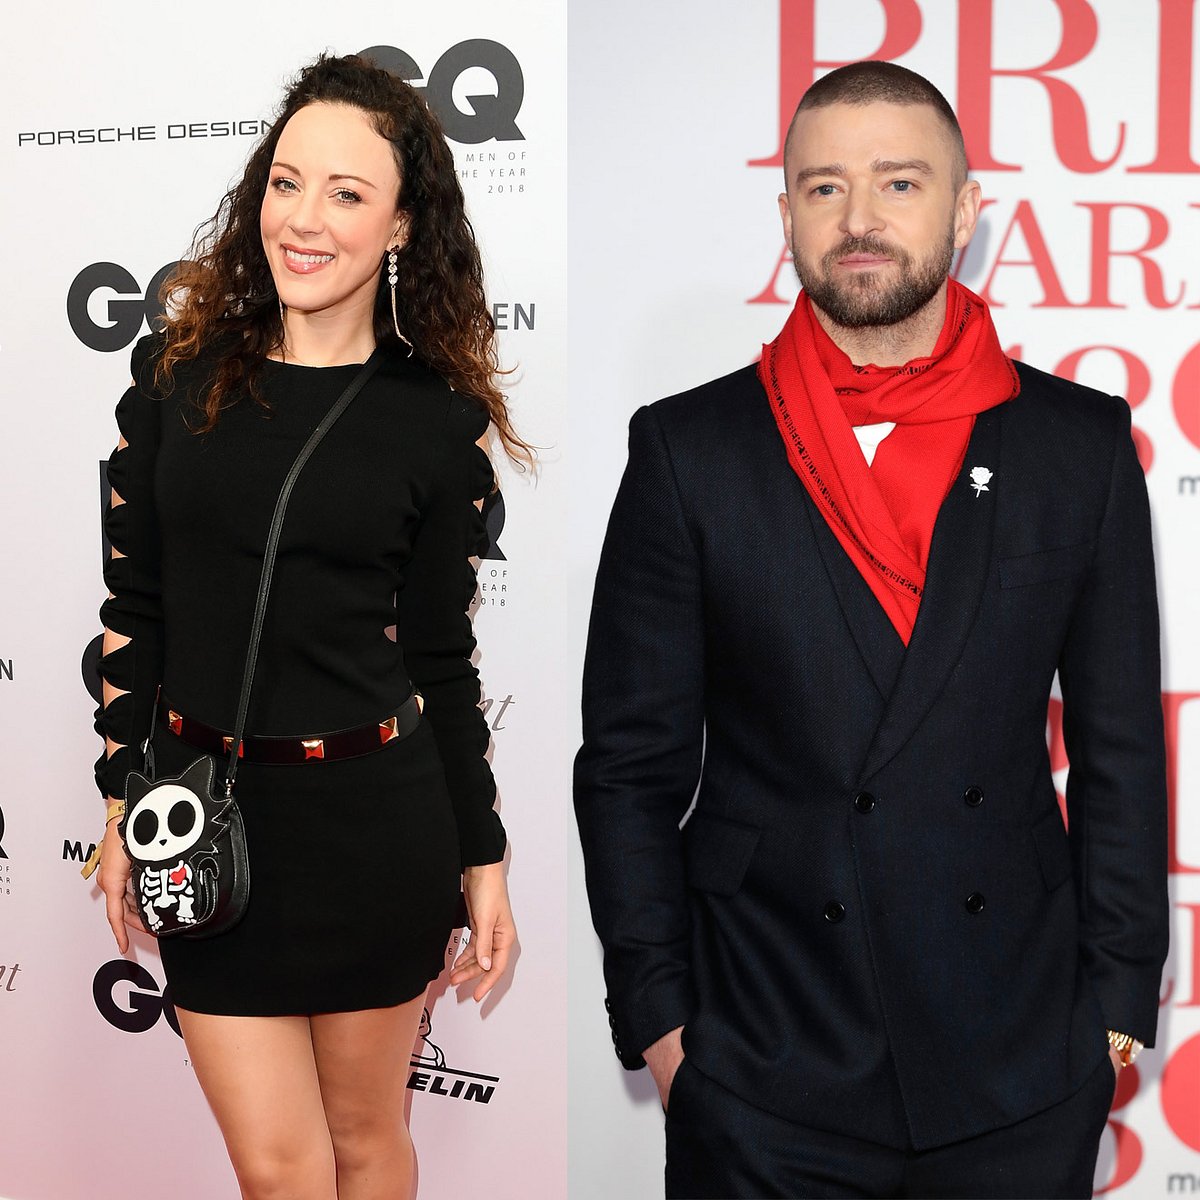 Hättet ihr gedacht, dass Blümchen und Justin Timberlake mal was miteinander hatten?